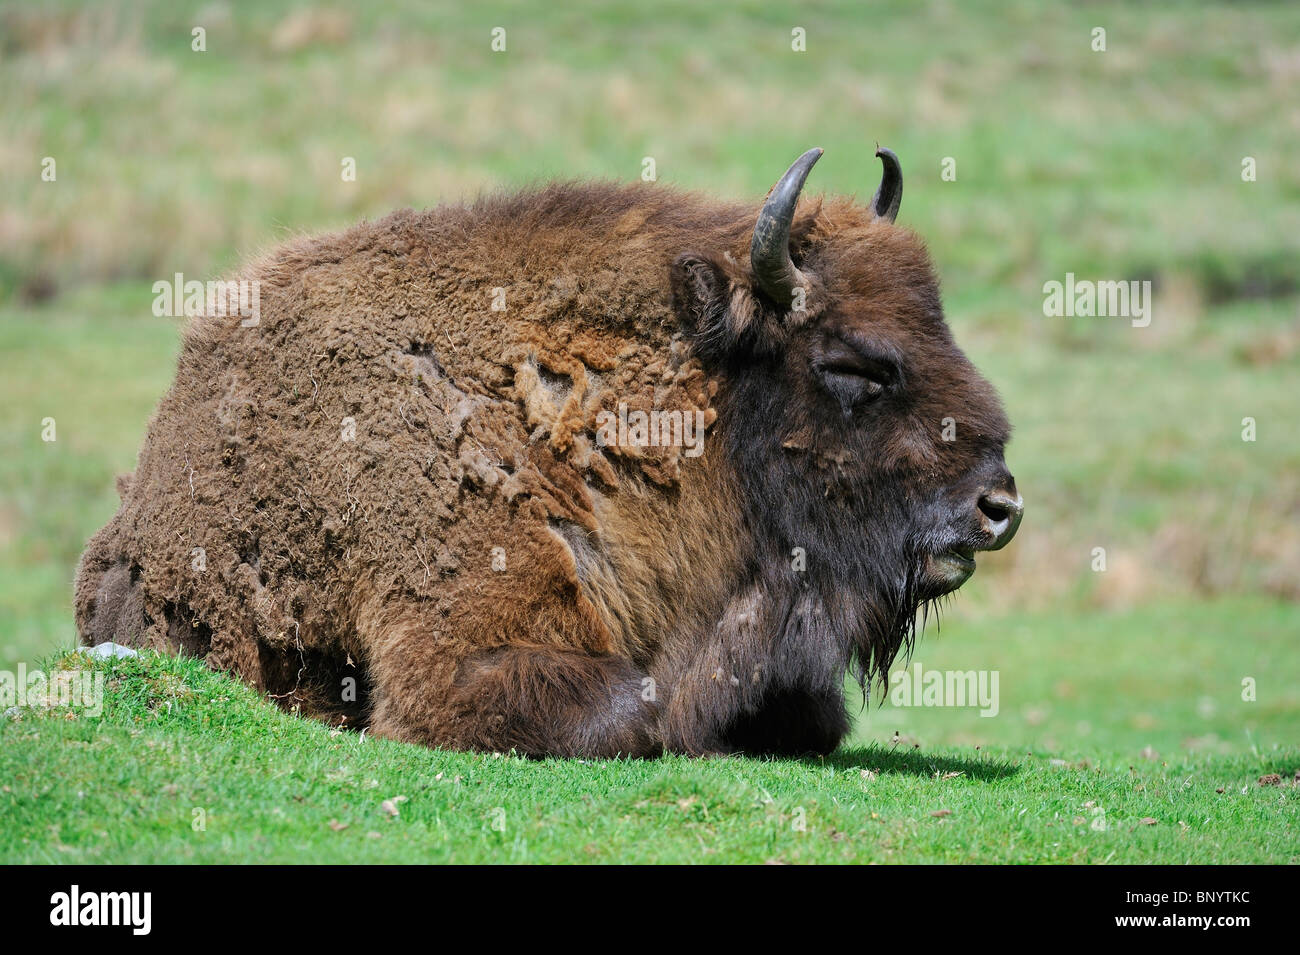 Wisent / European bison (Bison bonasus) resting in grassland Stock Photo